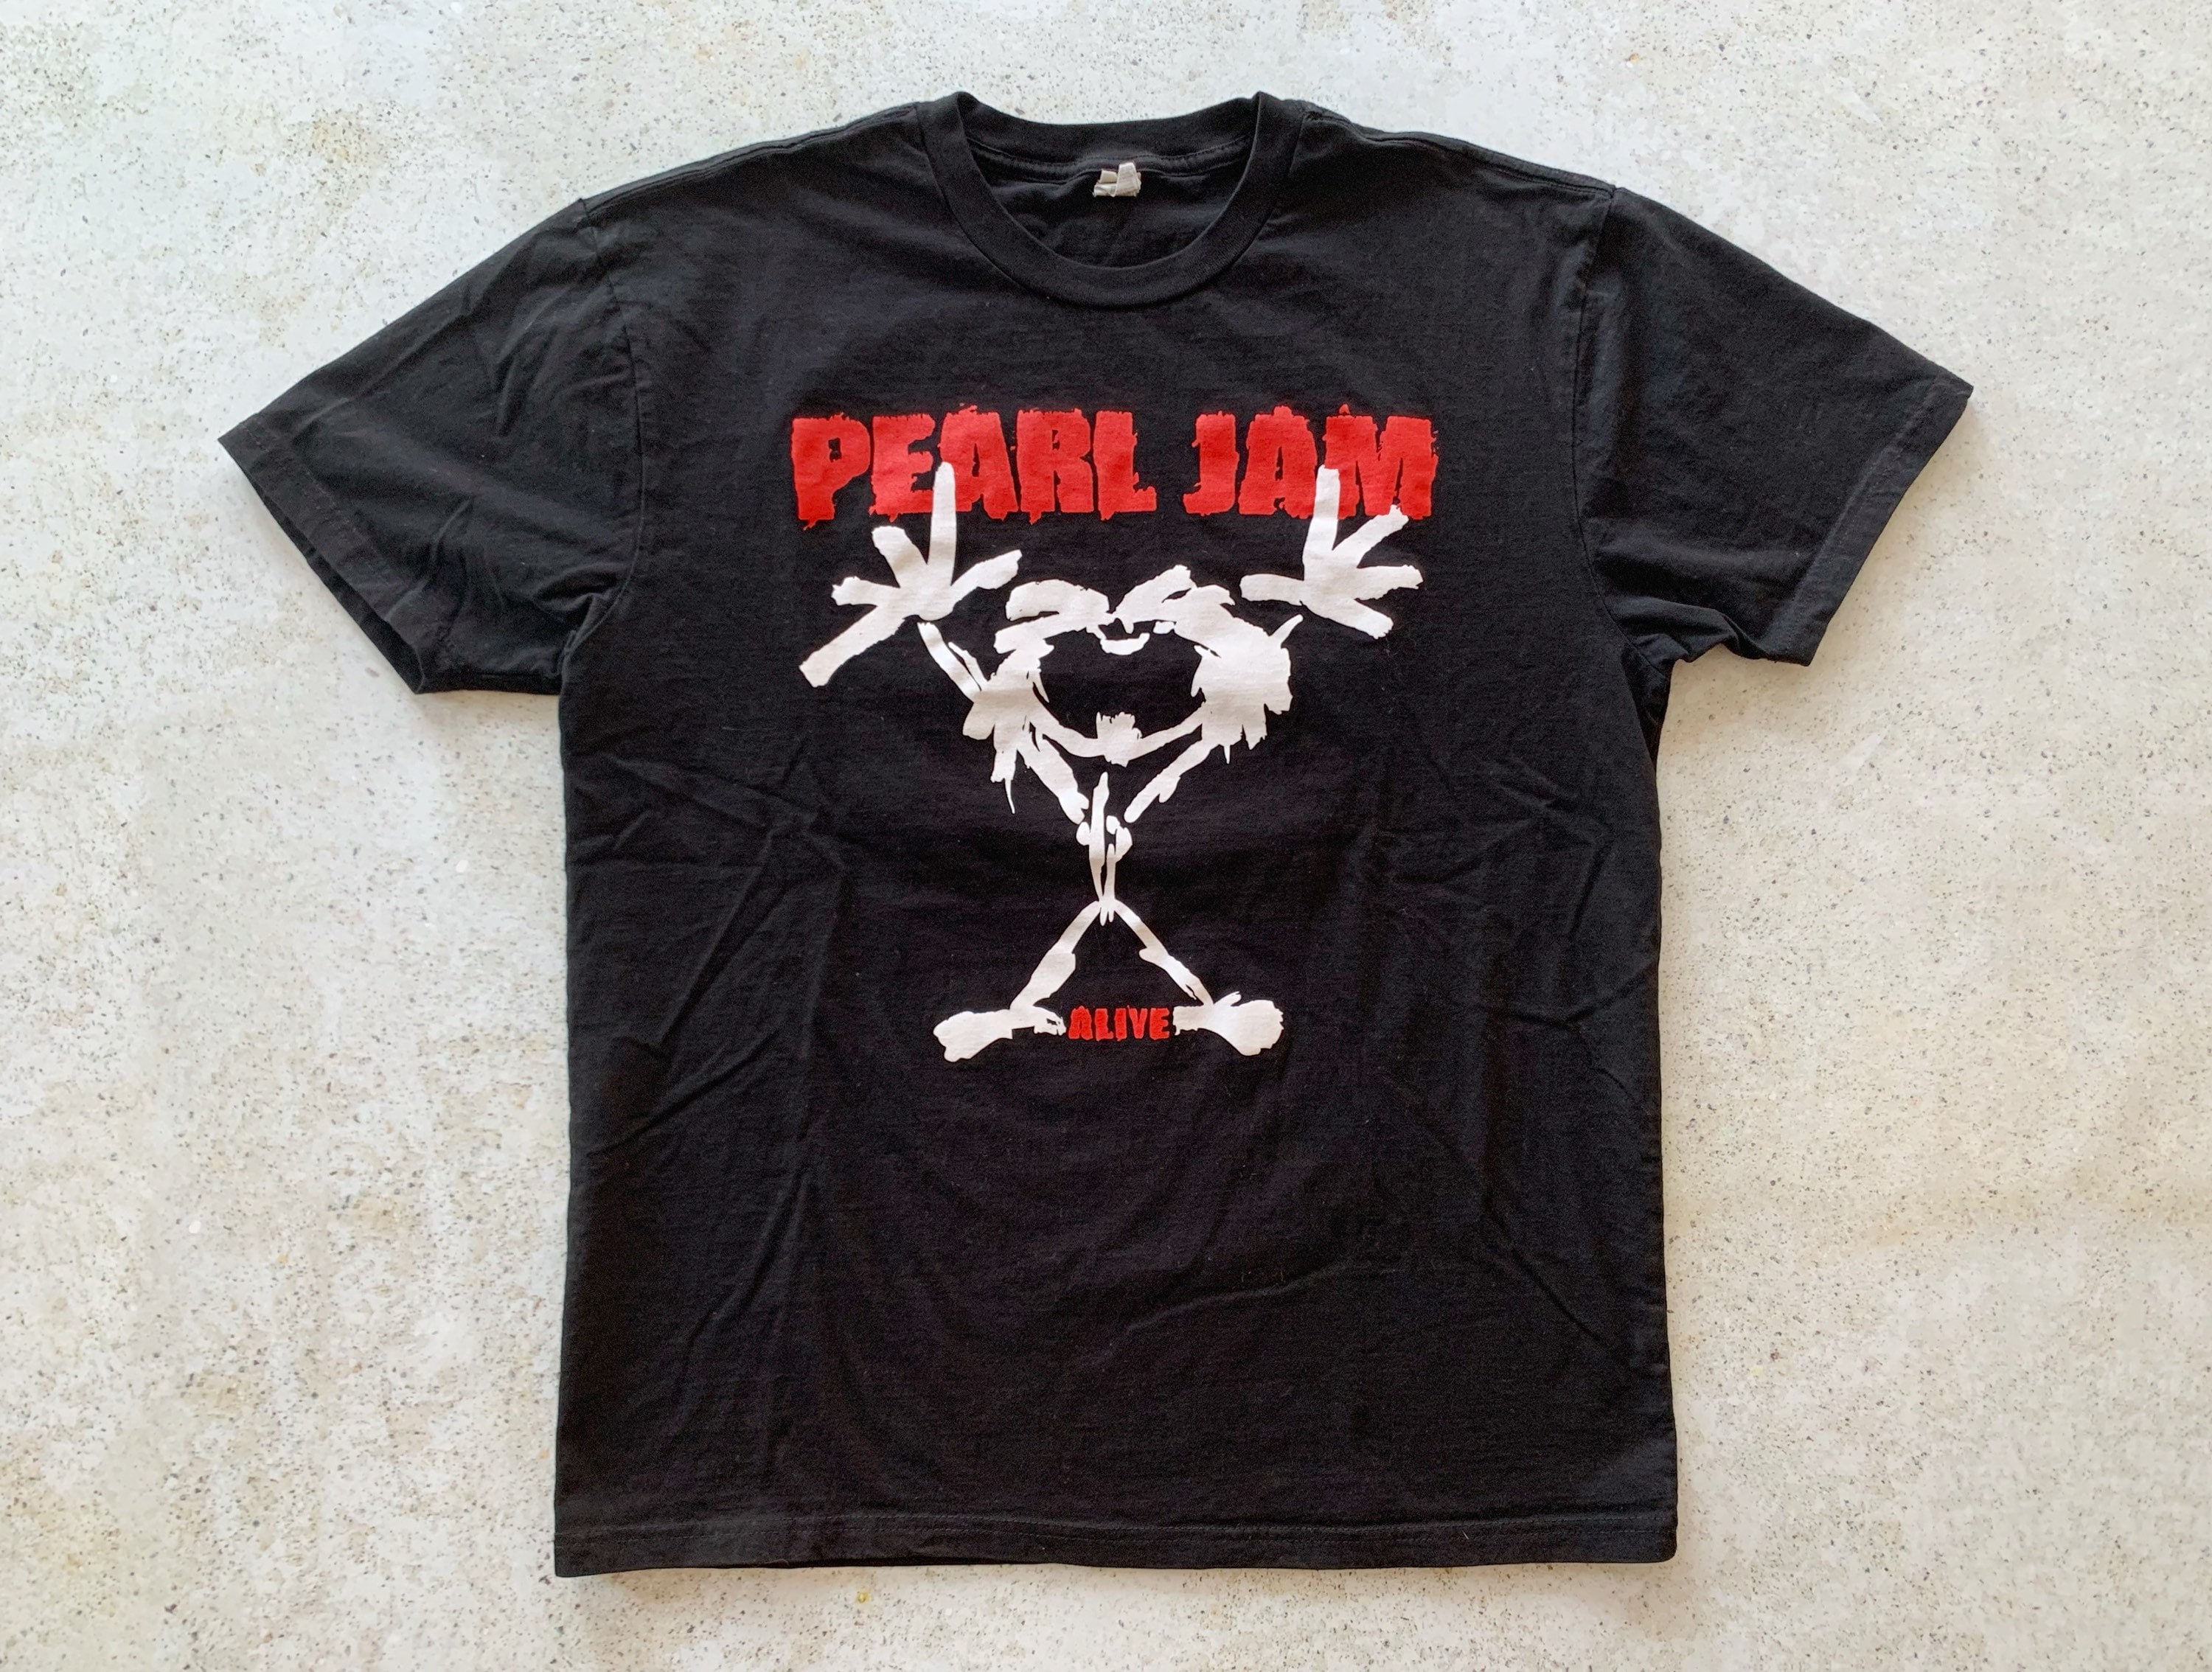 Vintage T-Shirt | PEARL JAM Alive 90’s Alternative Rock Concert Tour